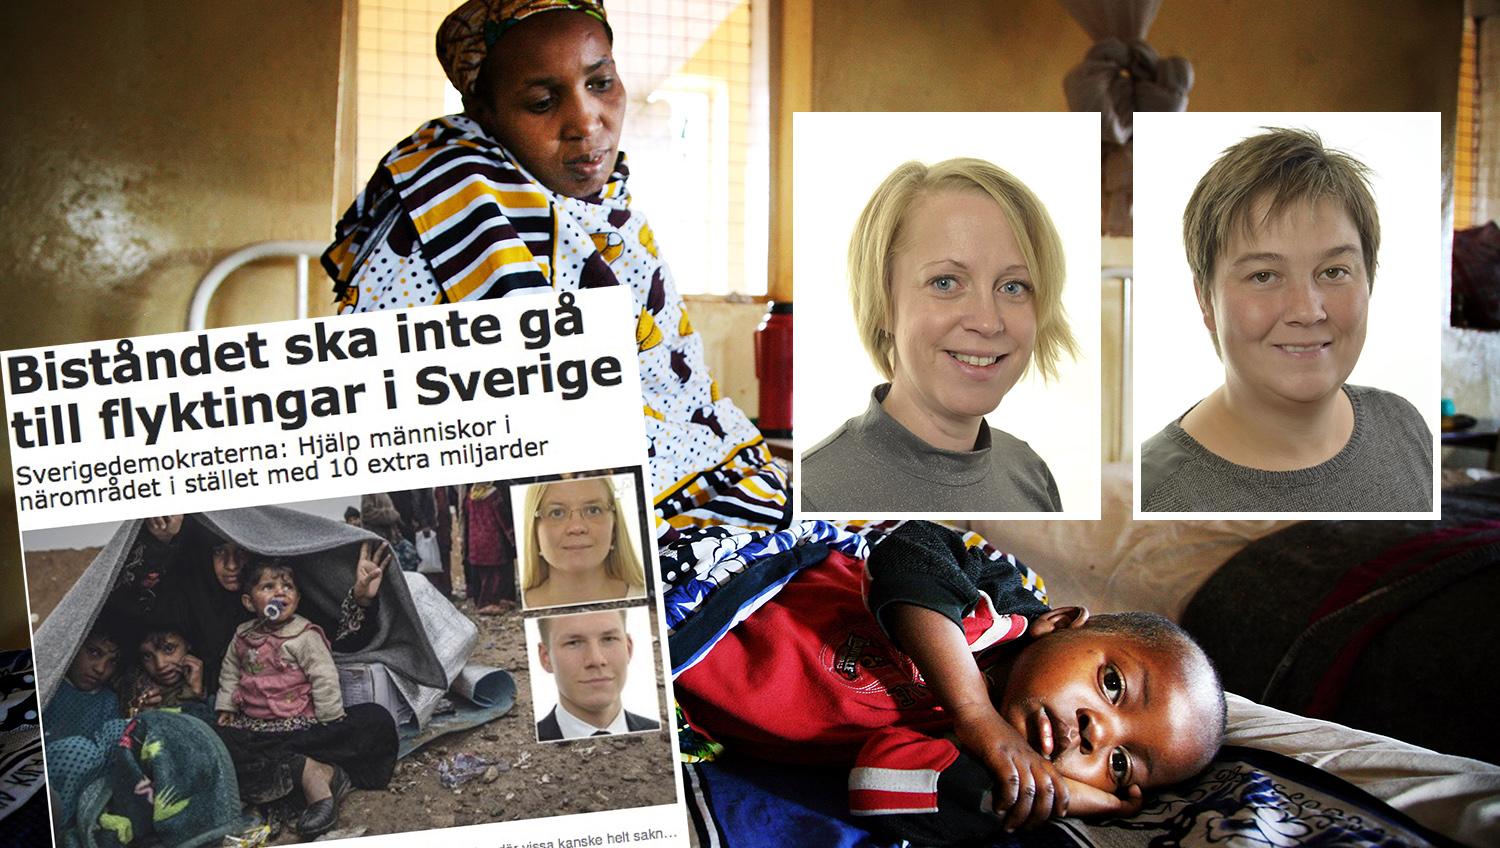 Sveriges bistånd till andra länder skulle med SD:s politik innebära nedskärningar 15 miljarder och en reträtt från Sveriges ställning som en humanitär stormakt, skriver debattörerna.